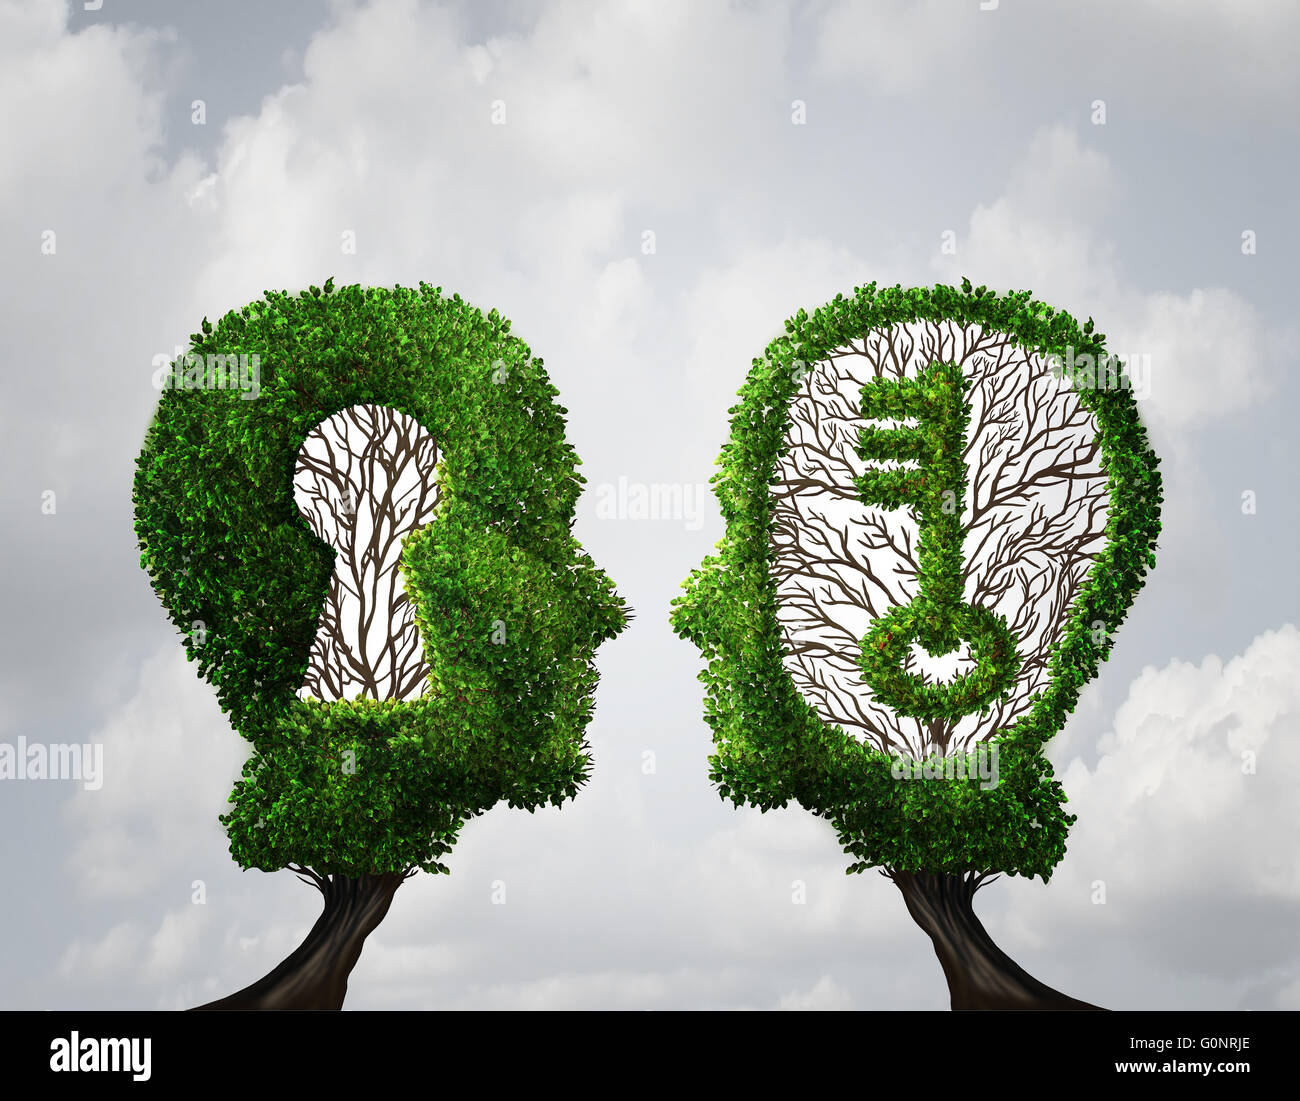 Schlüsselloch Lösung Partnerschaft und Schlüssel Gelegenheit Geschäftskonzept als zwei Bäume geformt wie ein menschlicher Kopf mit einem Schlüssel und Schlüsselloch Formen als Zusammenarbeit Erfolg Metapher in eine 3D Darstellung Stil. Stockfoto